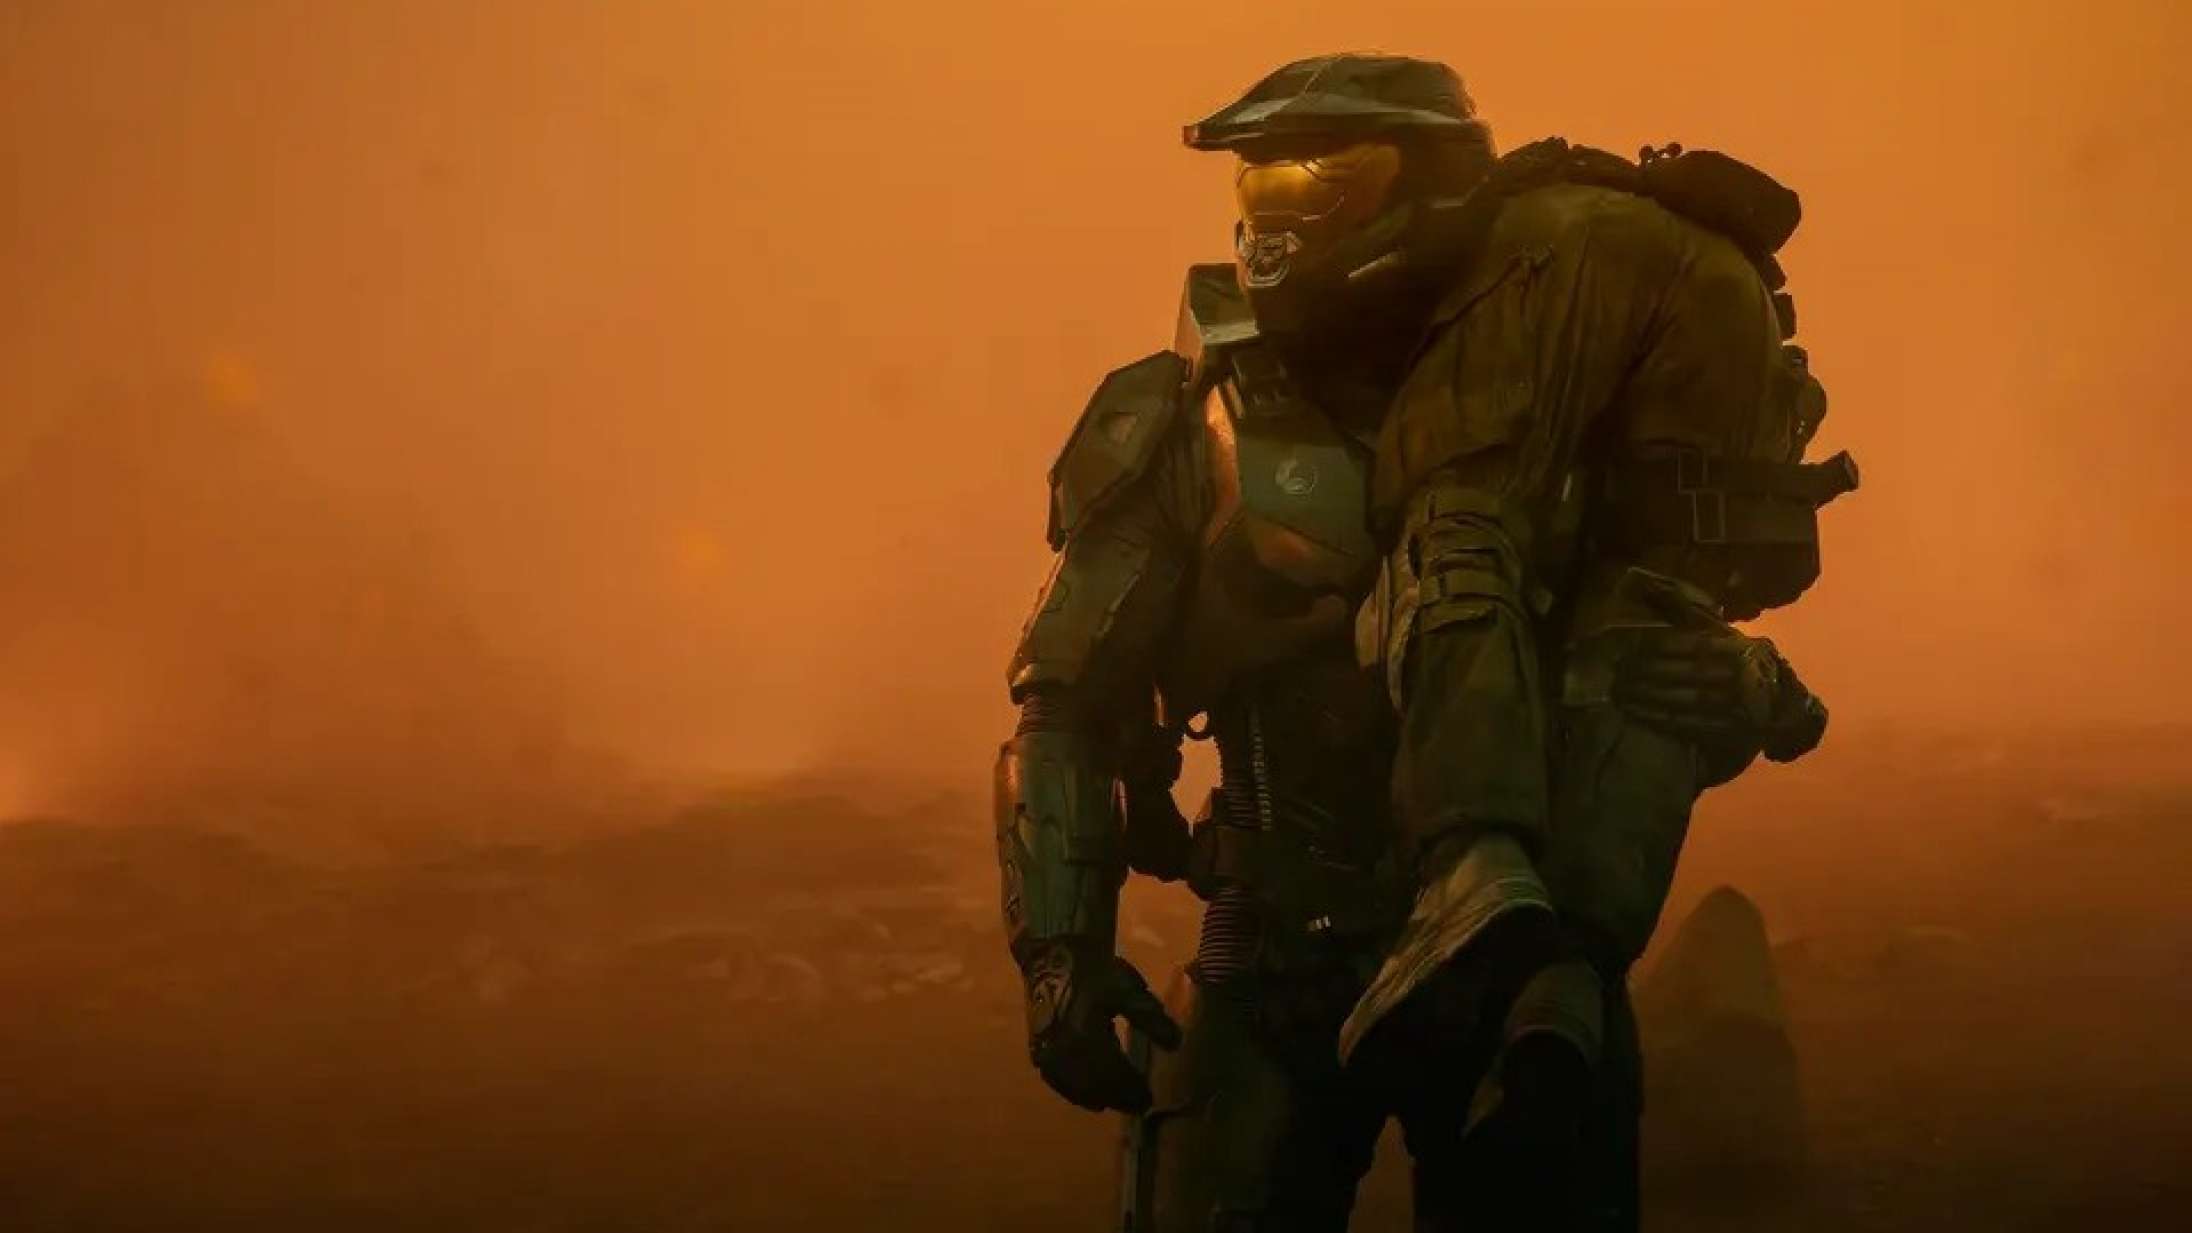 ’Halo’ sæson 2: Min Xbox er støvet af igen efter vellykket soft reboot af spilserie